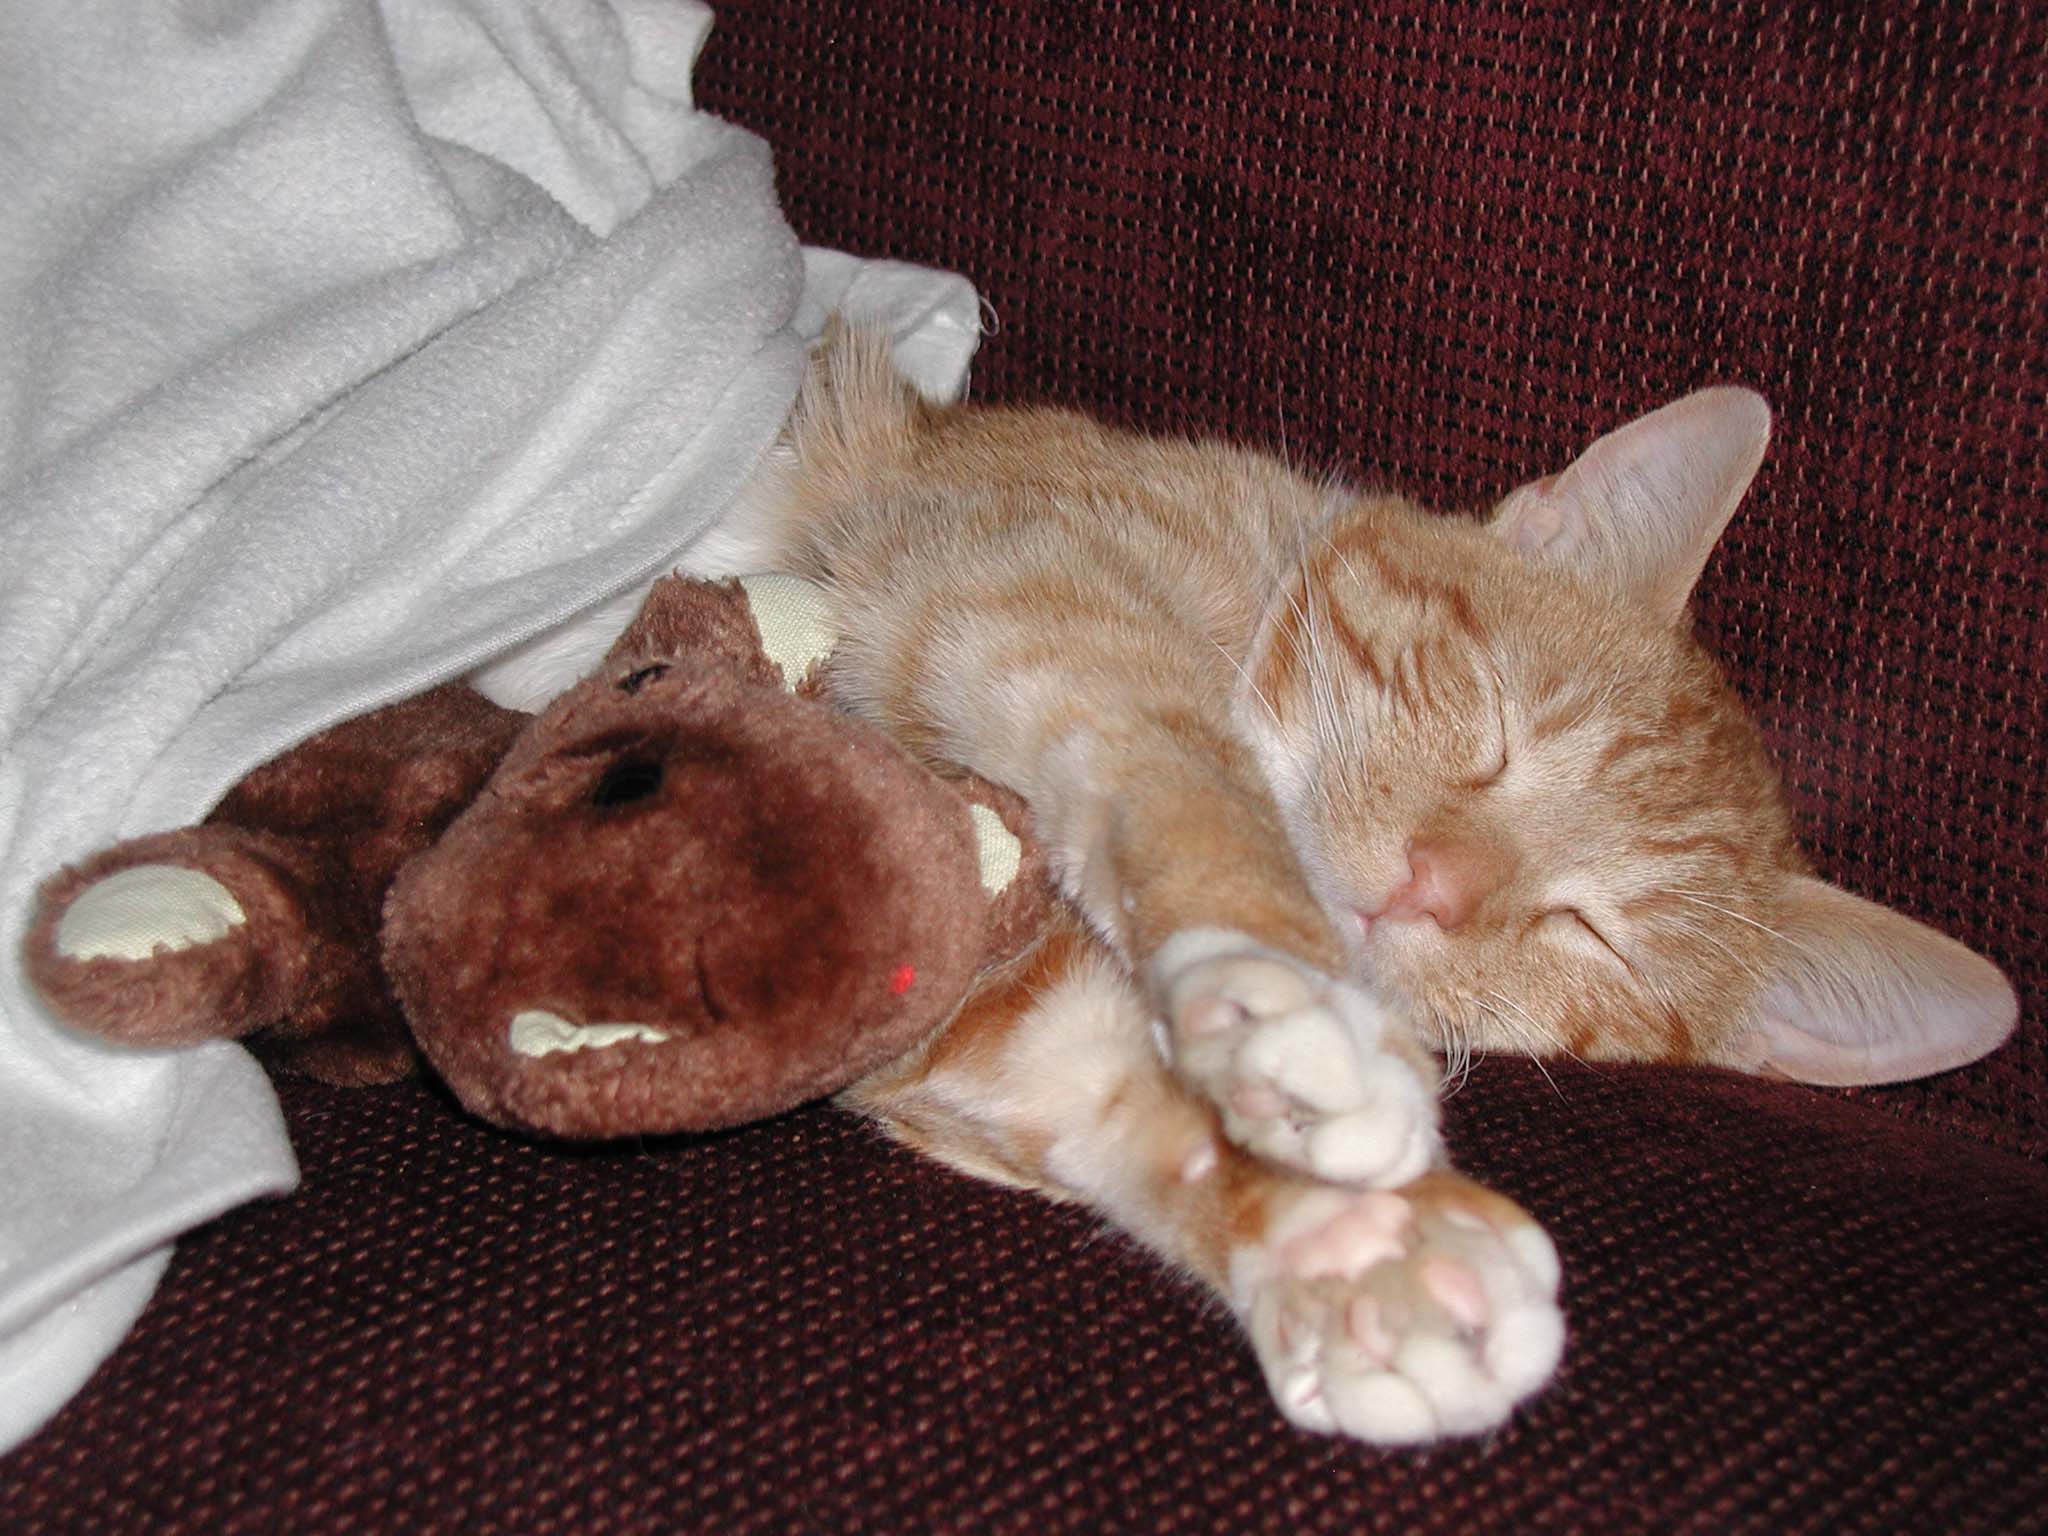 Cat with Teddy Bear